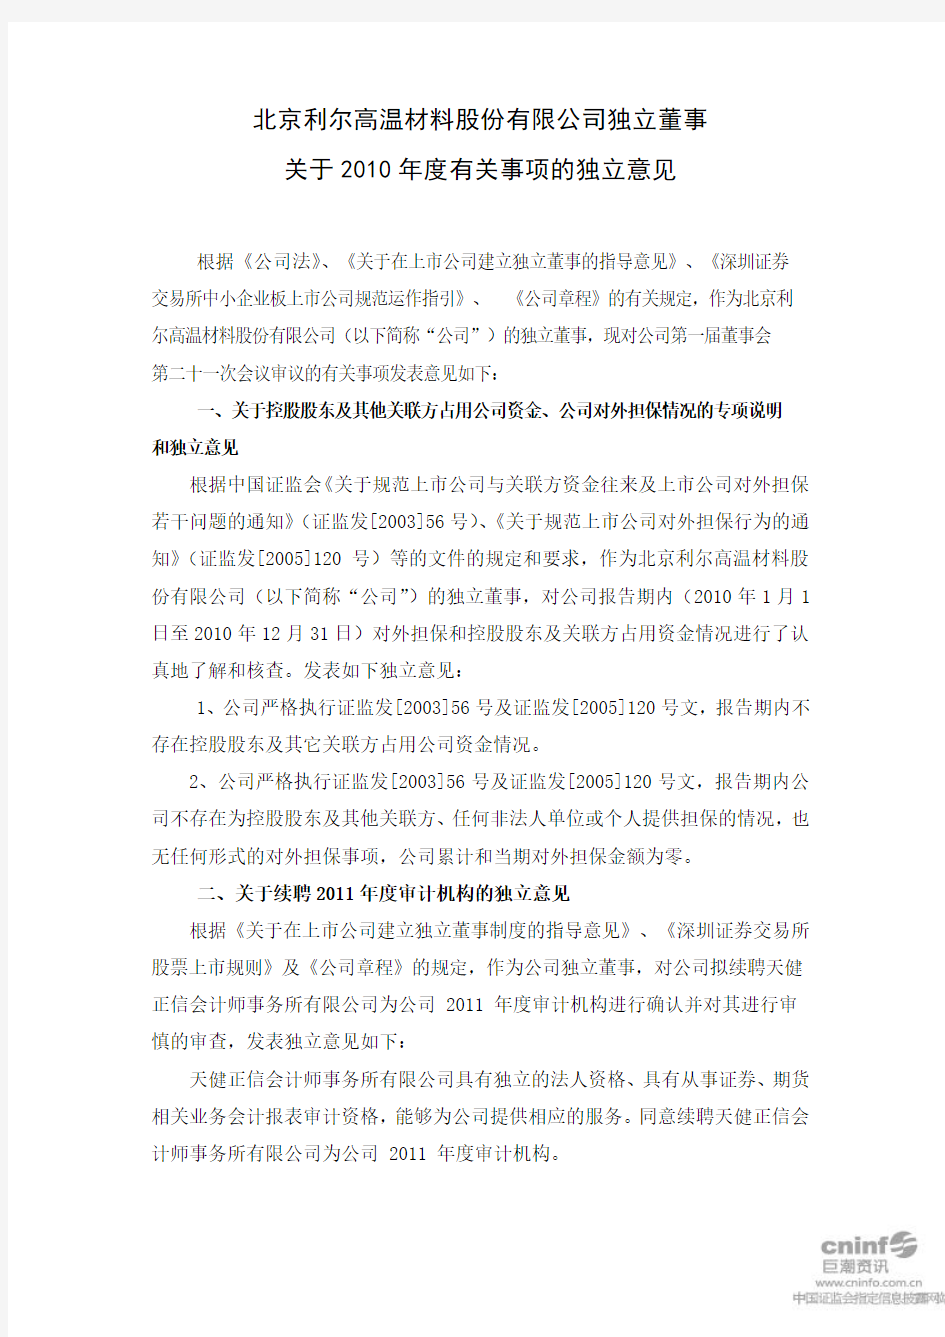 北京利尔：独立董事关于2010年度有关事项的独立意见 2011-03-01